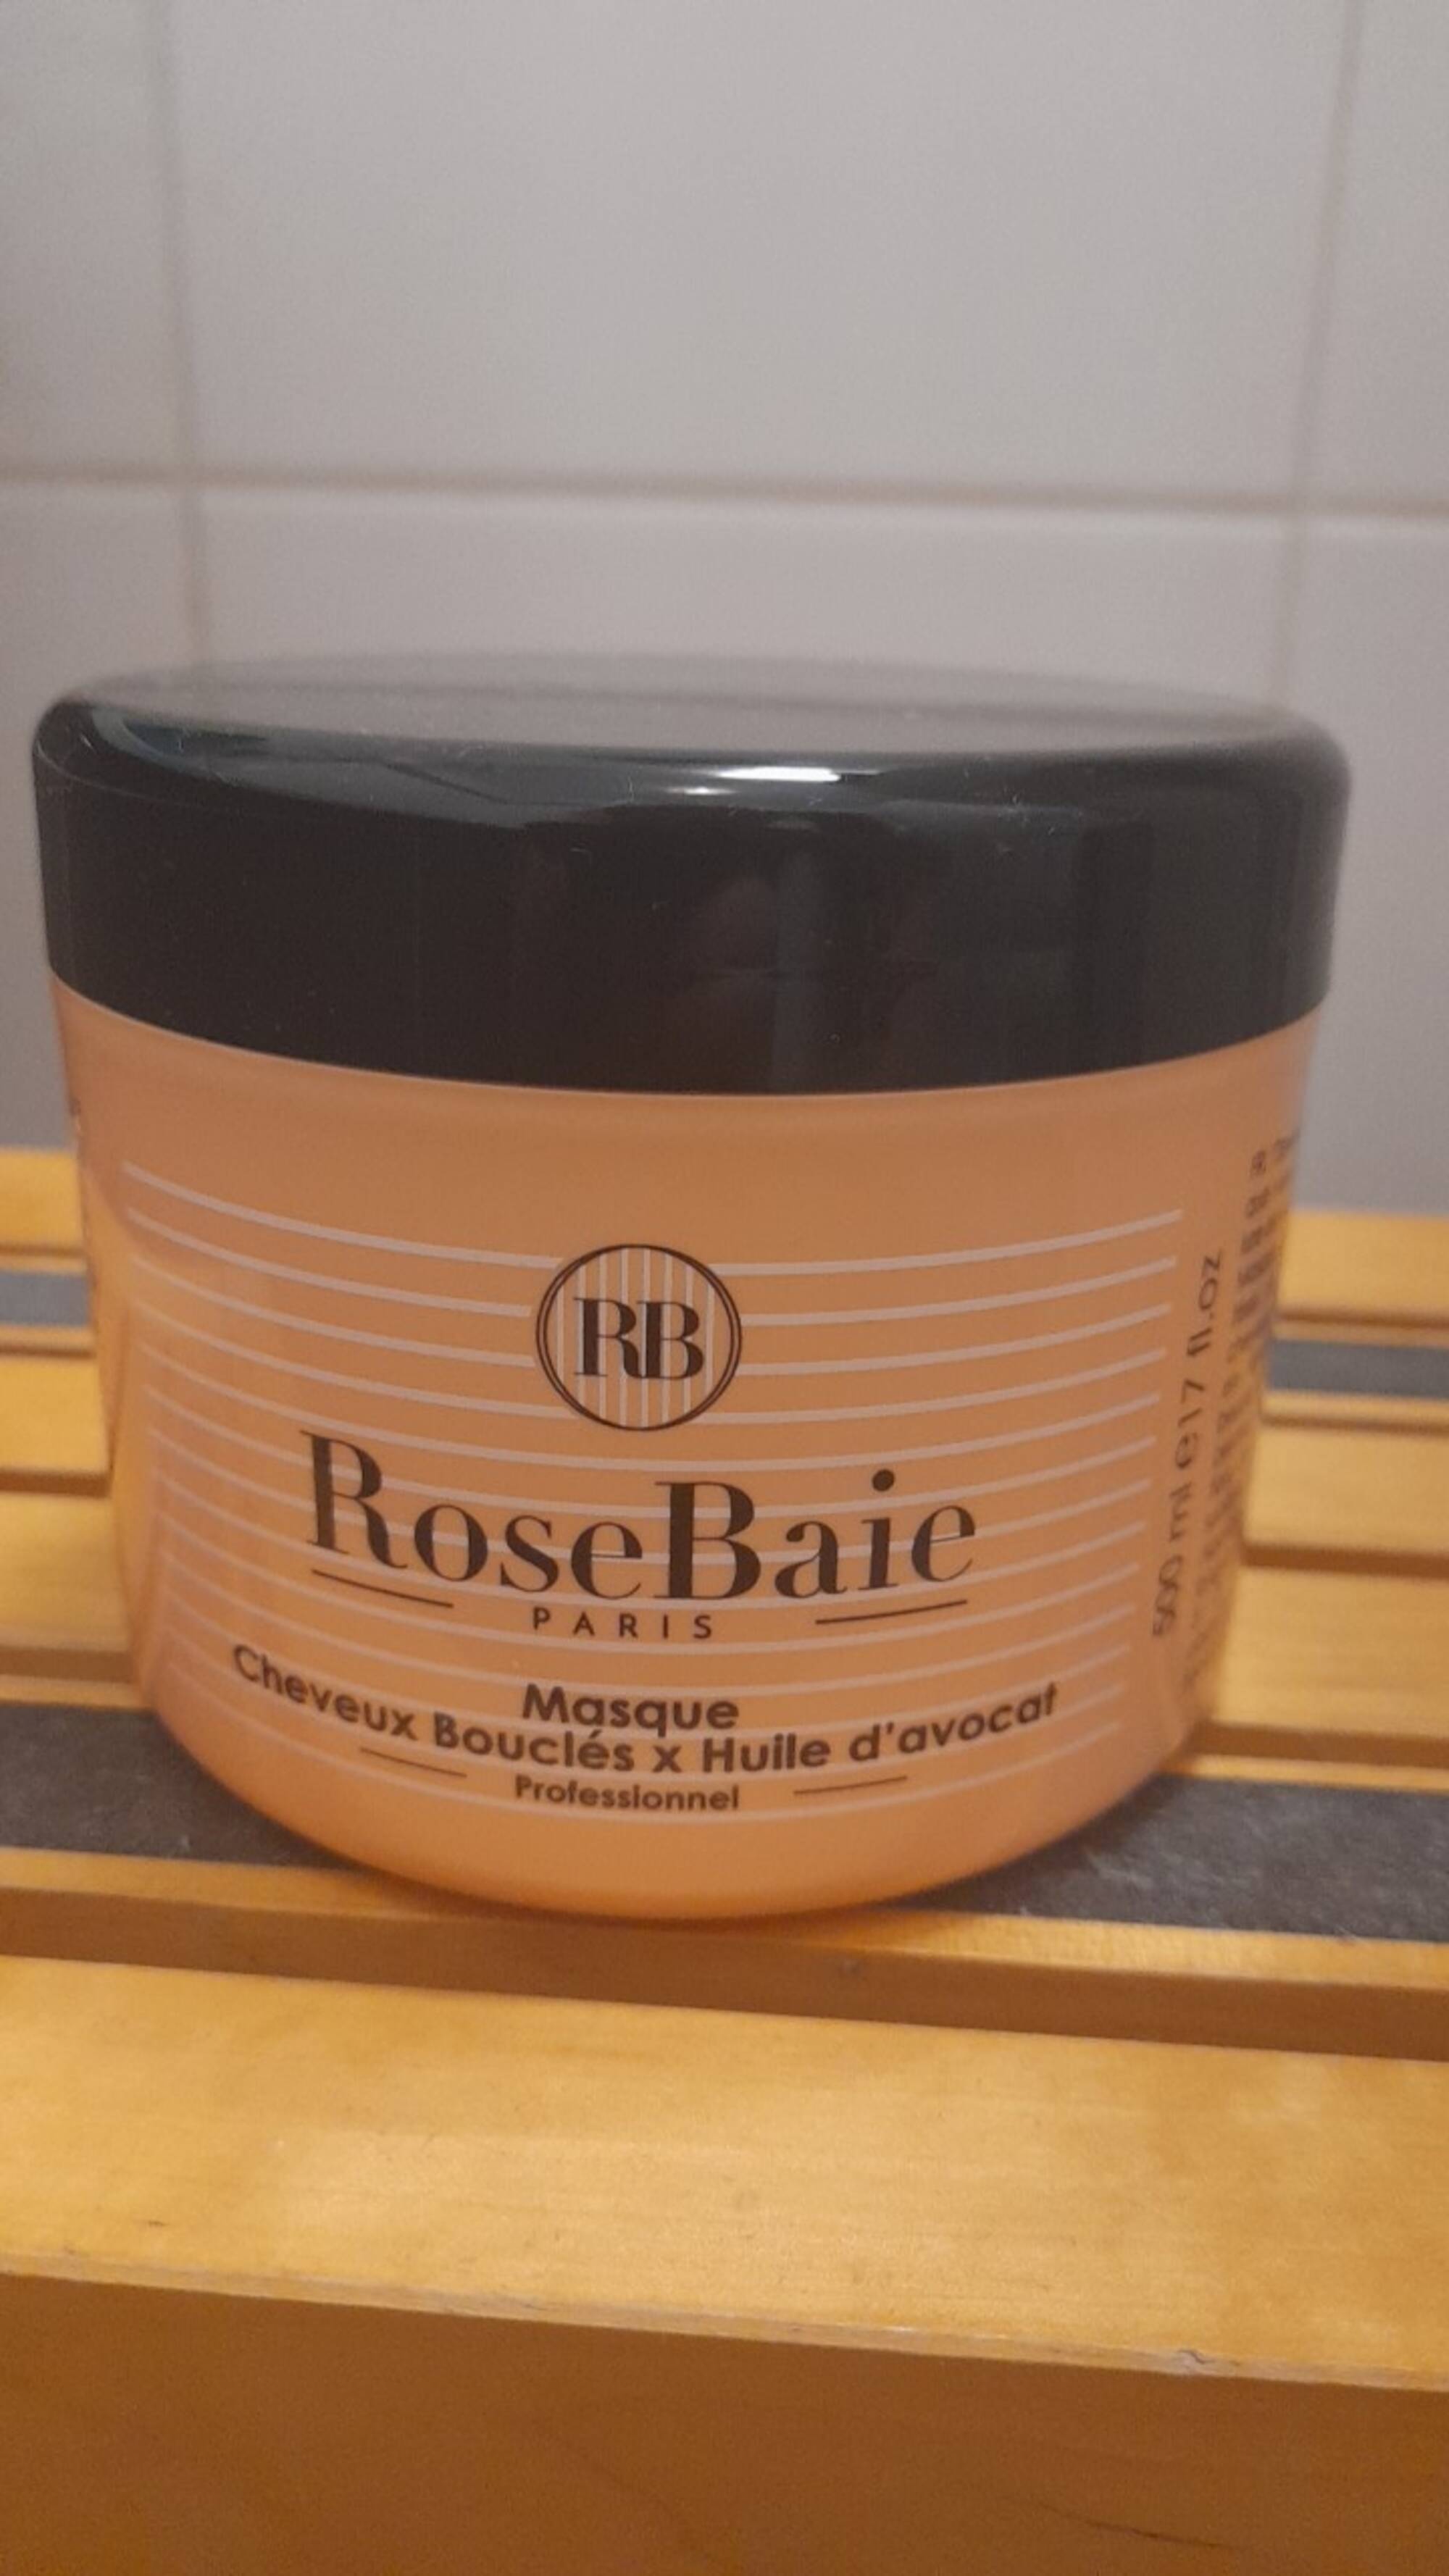 ROSEBAIE - Masque cheveux bouclés & huile d'avocat